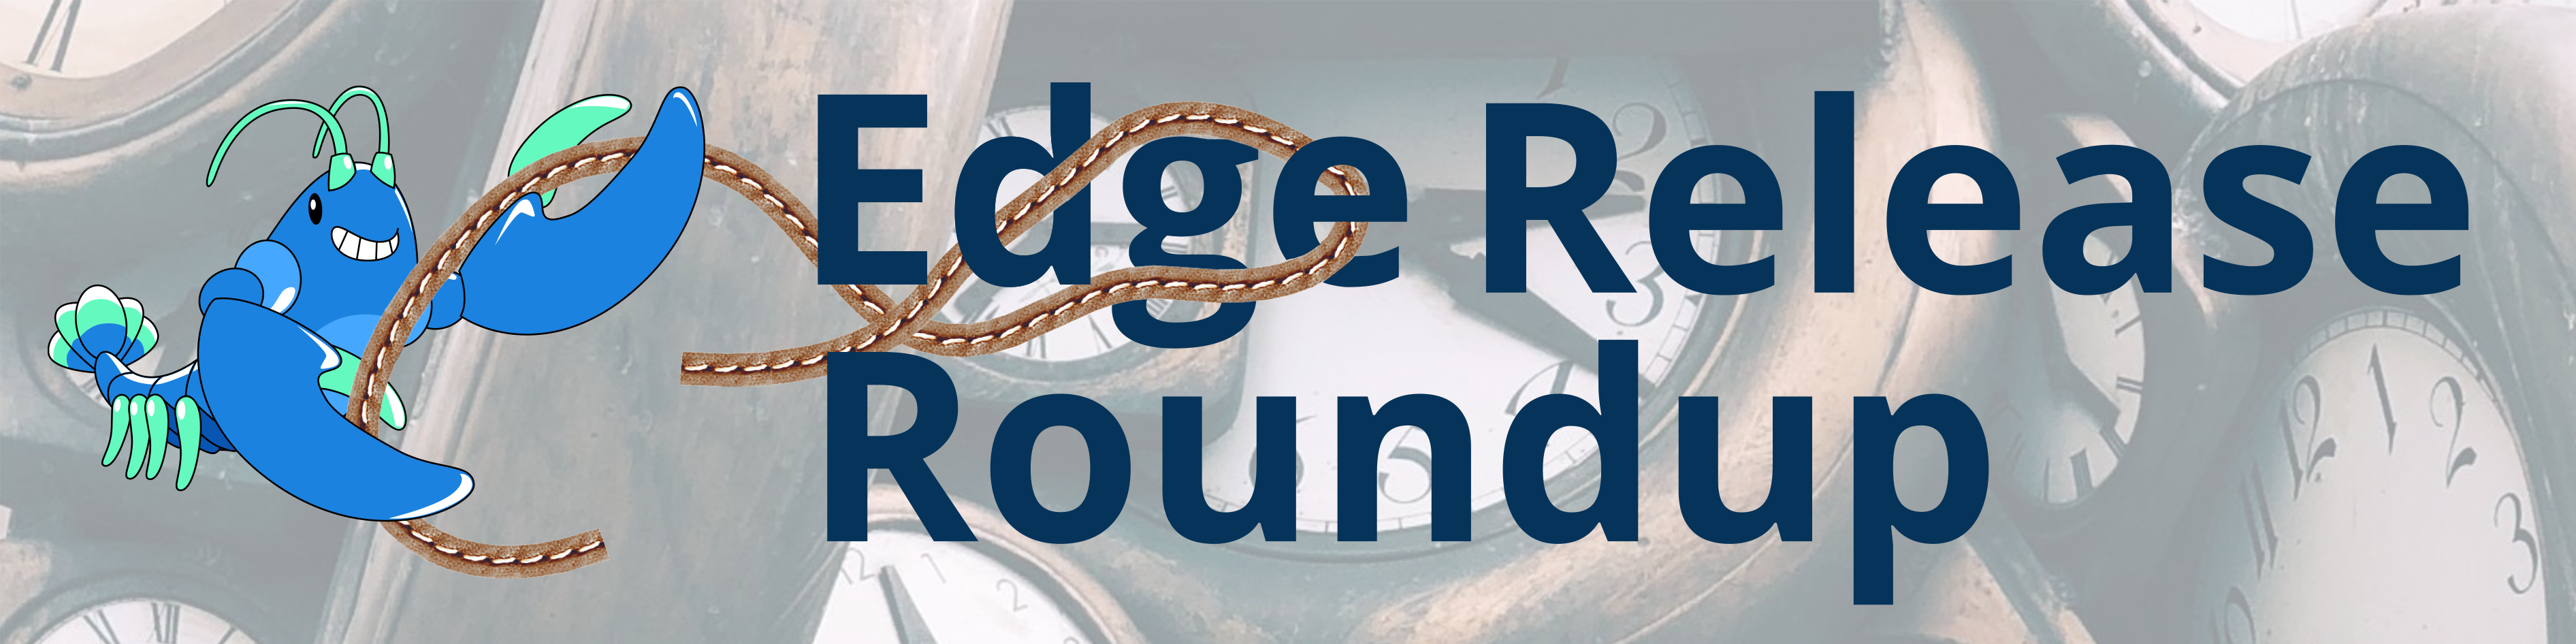 August Linkerd Edge Release Roundup